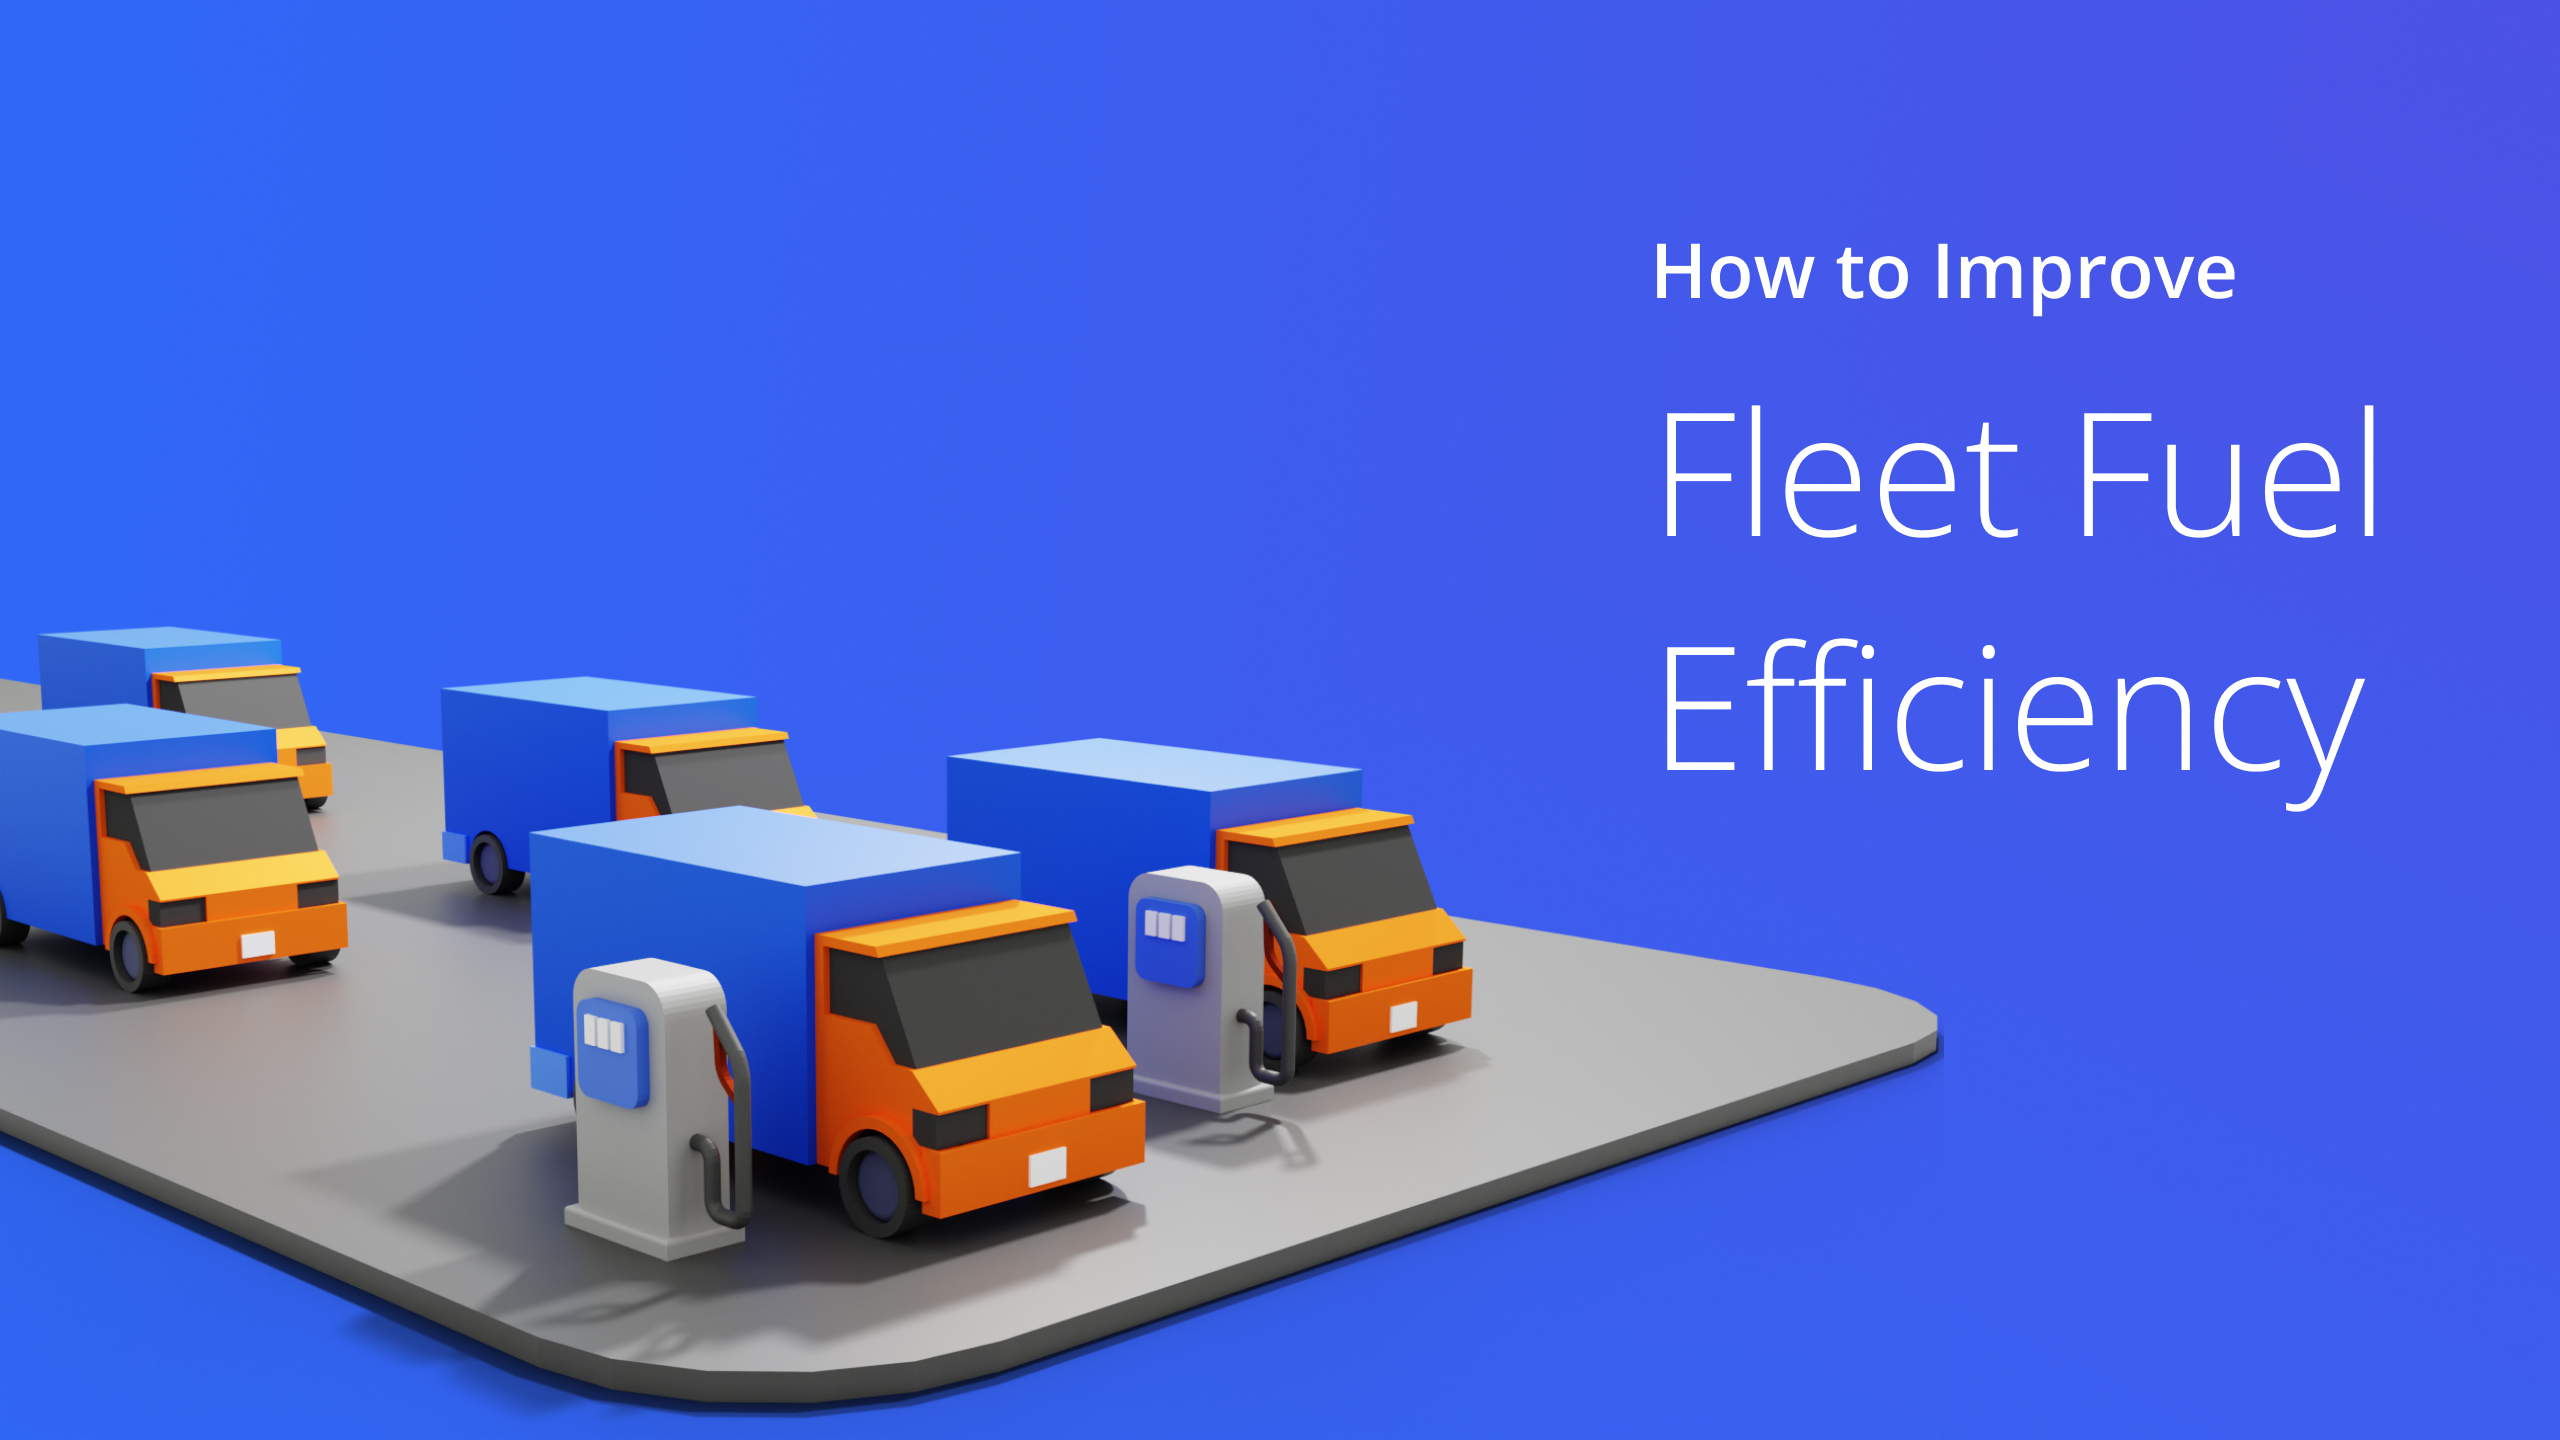 custom image depicting how to improve fleet fuel efficiency